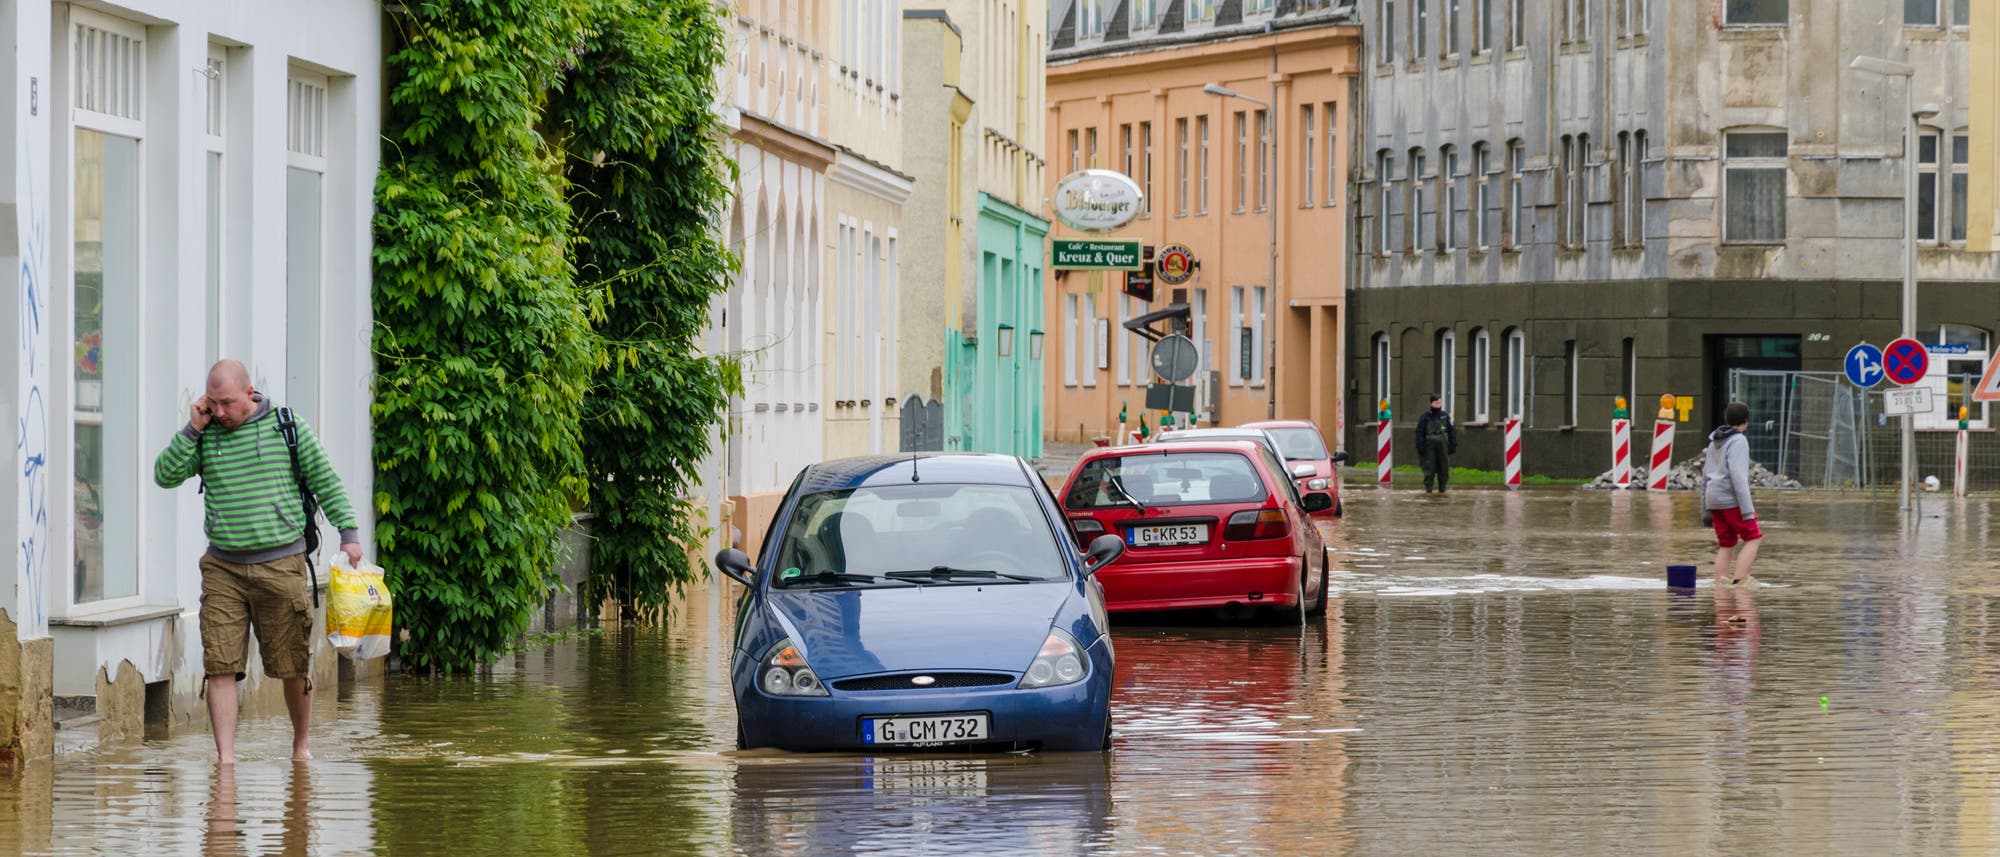 Überschwemmte Straße mit im Wasser stehenden Autos und vermutlich vollgelaufenen Kellern.